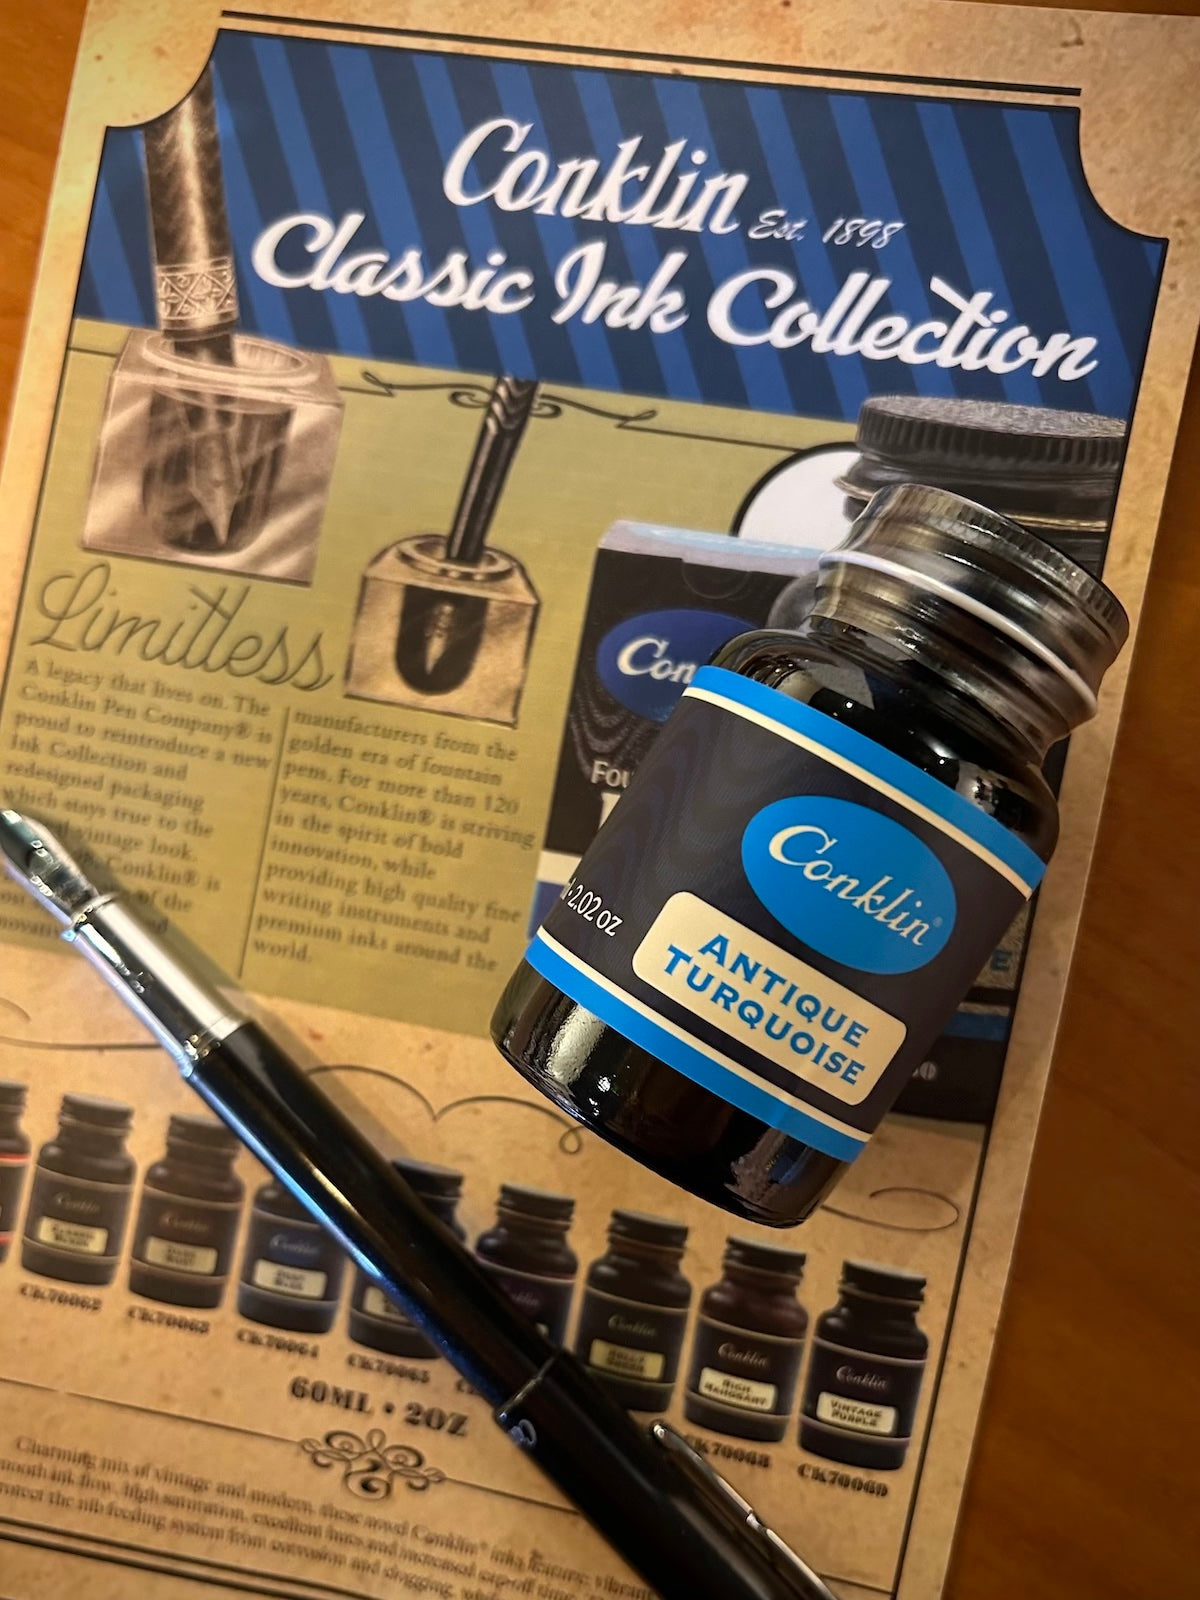 Conklin Classic Ink 60ml Bottle